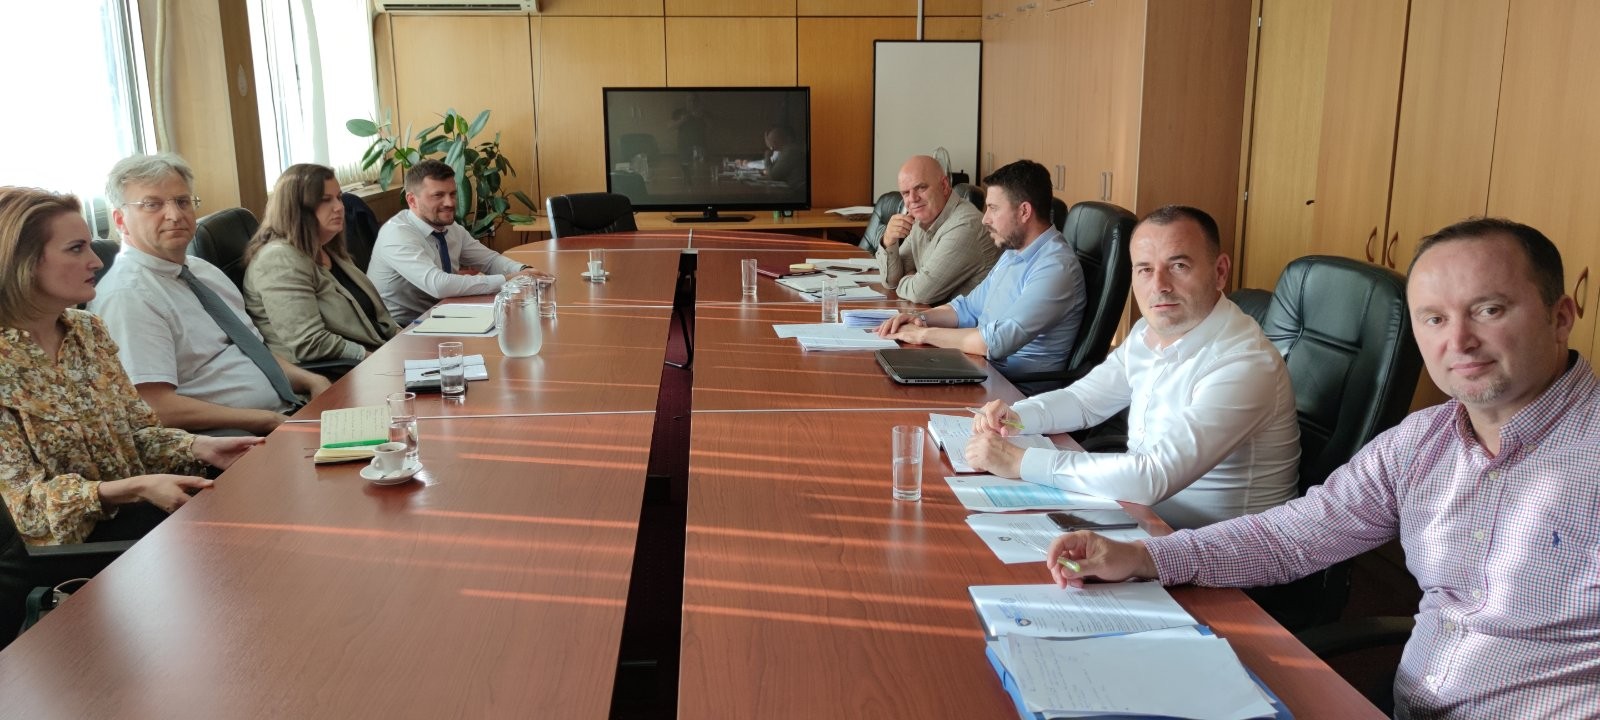 Filloj punën Bordi i Përkohshëm i Drejtorëve të KRU ”Prishtina”  